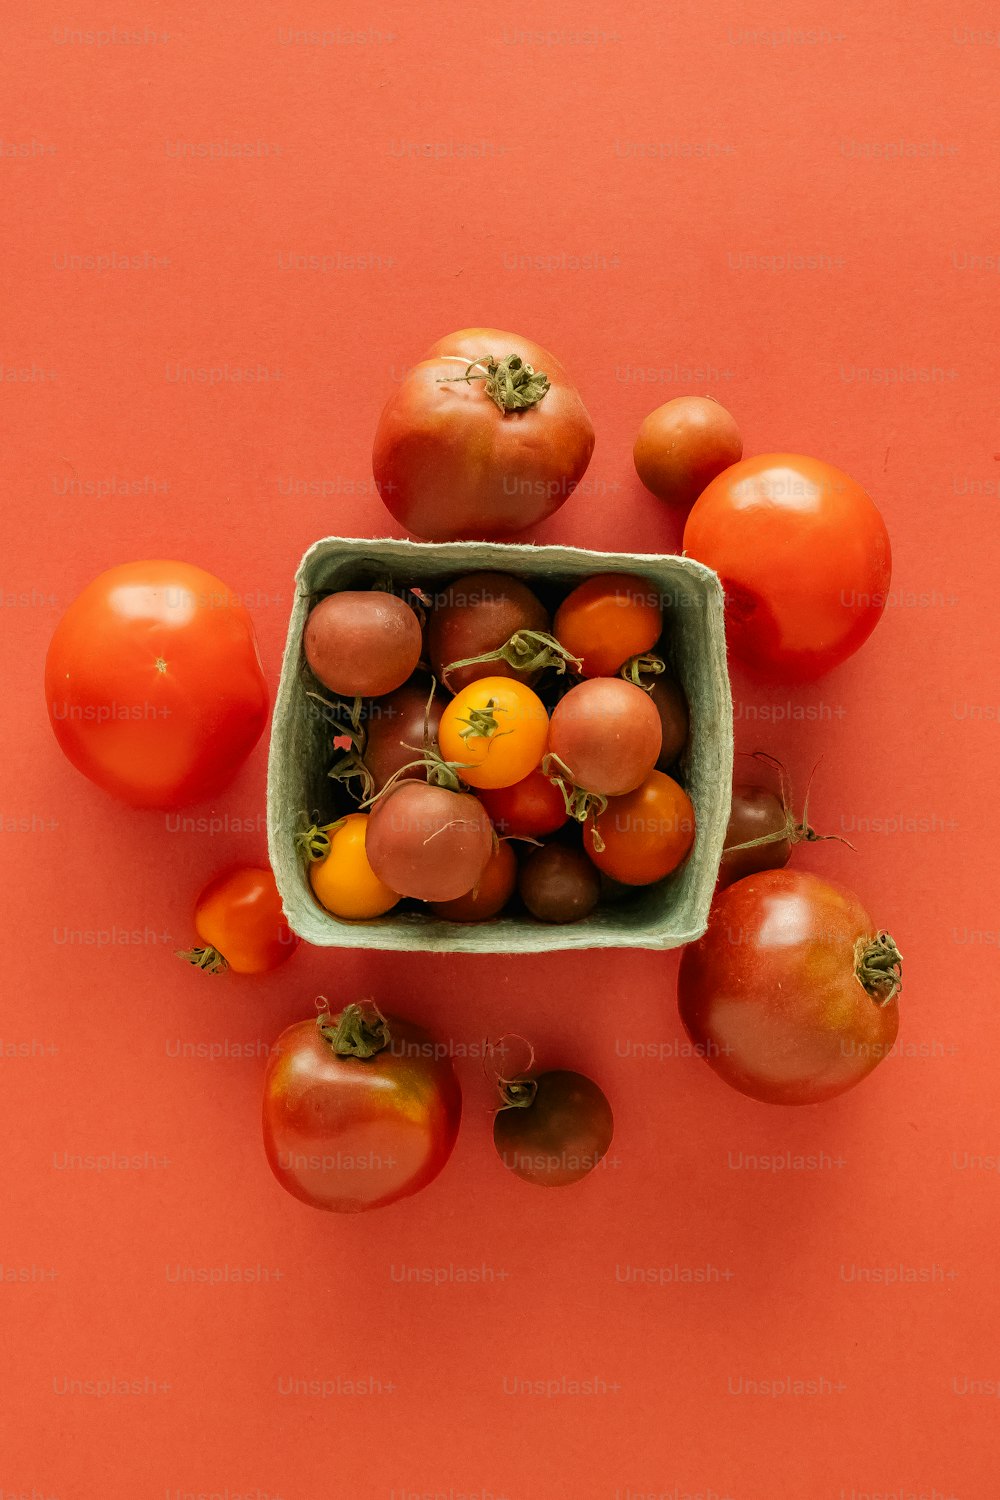 Un tazón verde lleno de muchos tipos diferentes de tomates